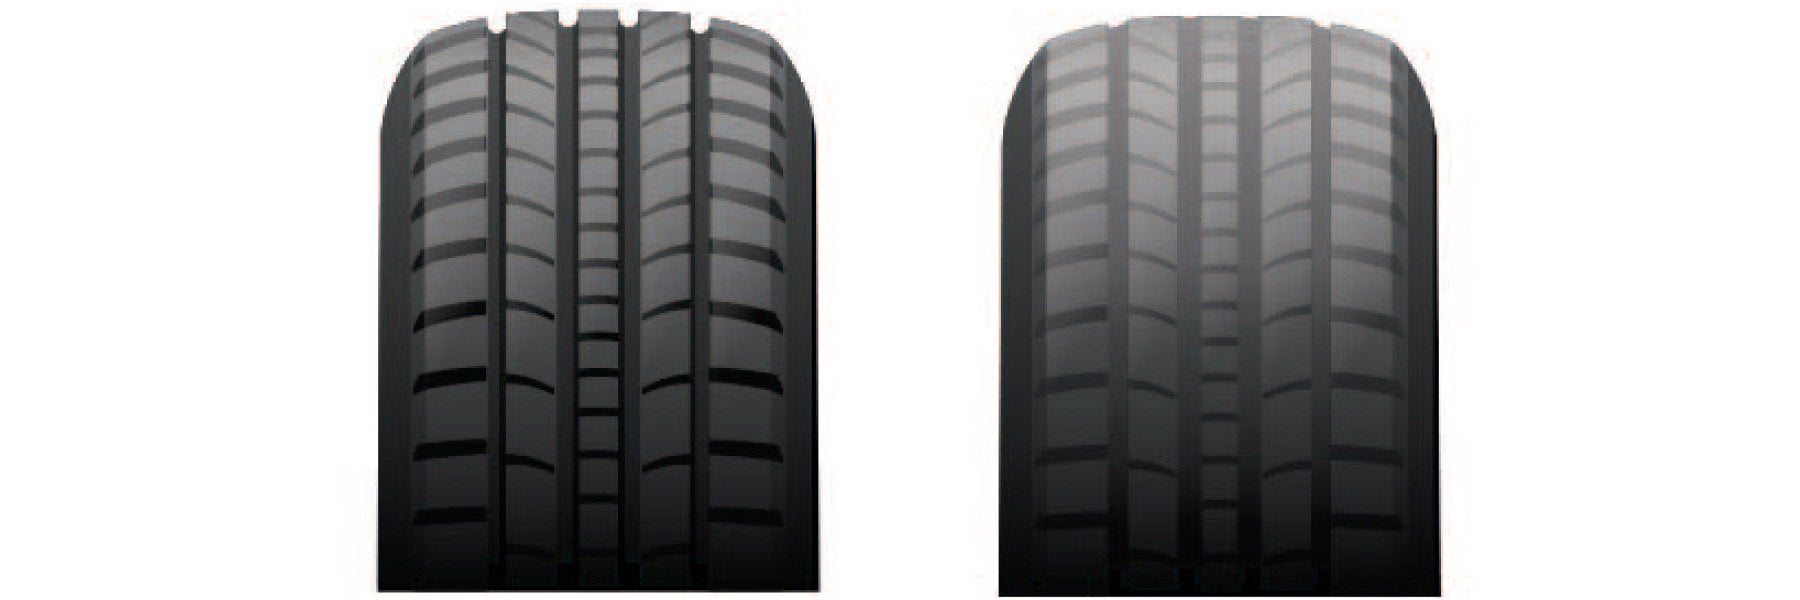 Tire tread depth comparison at DARCARS Kia of Lanham in Lanham MD